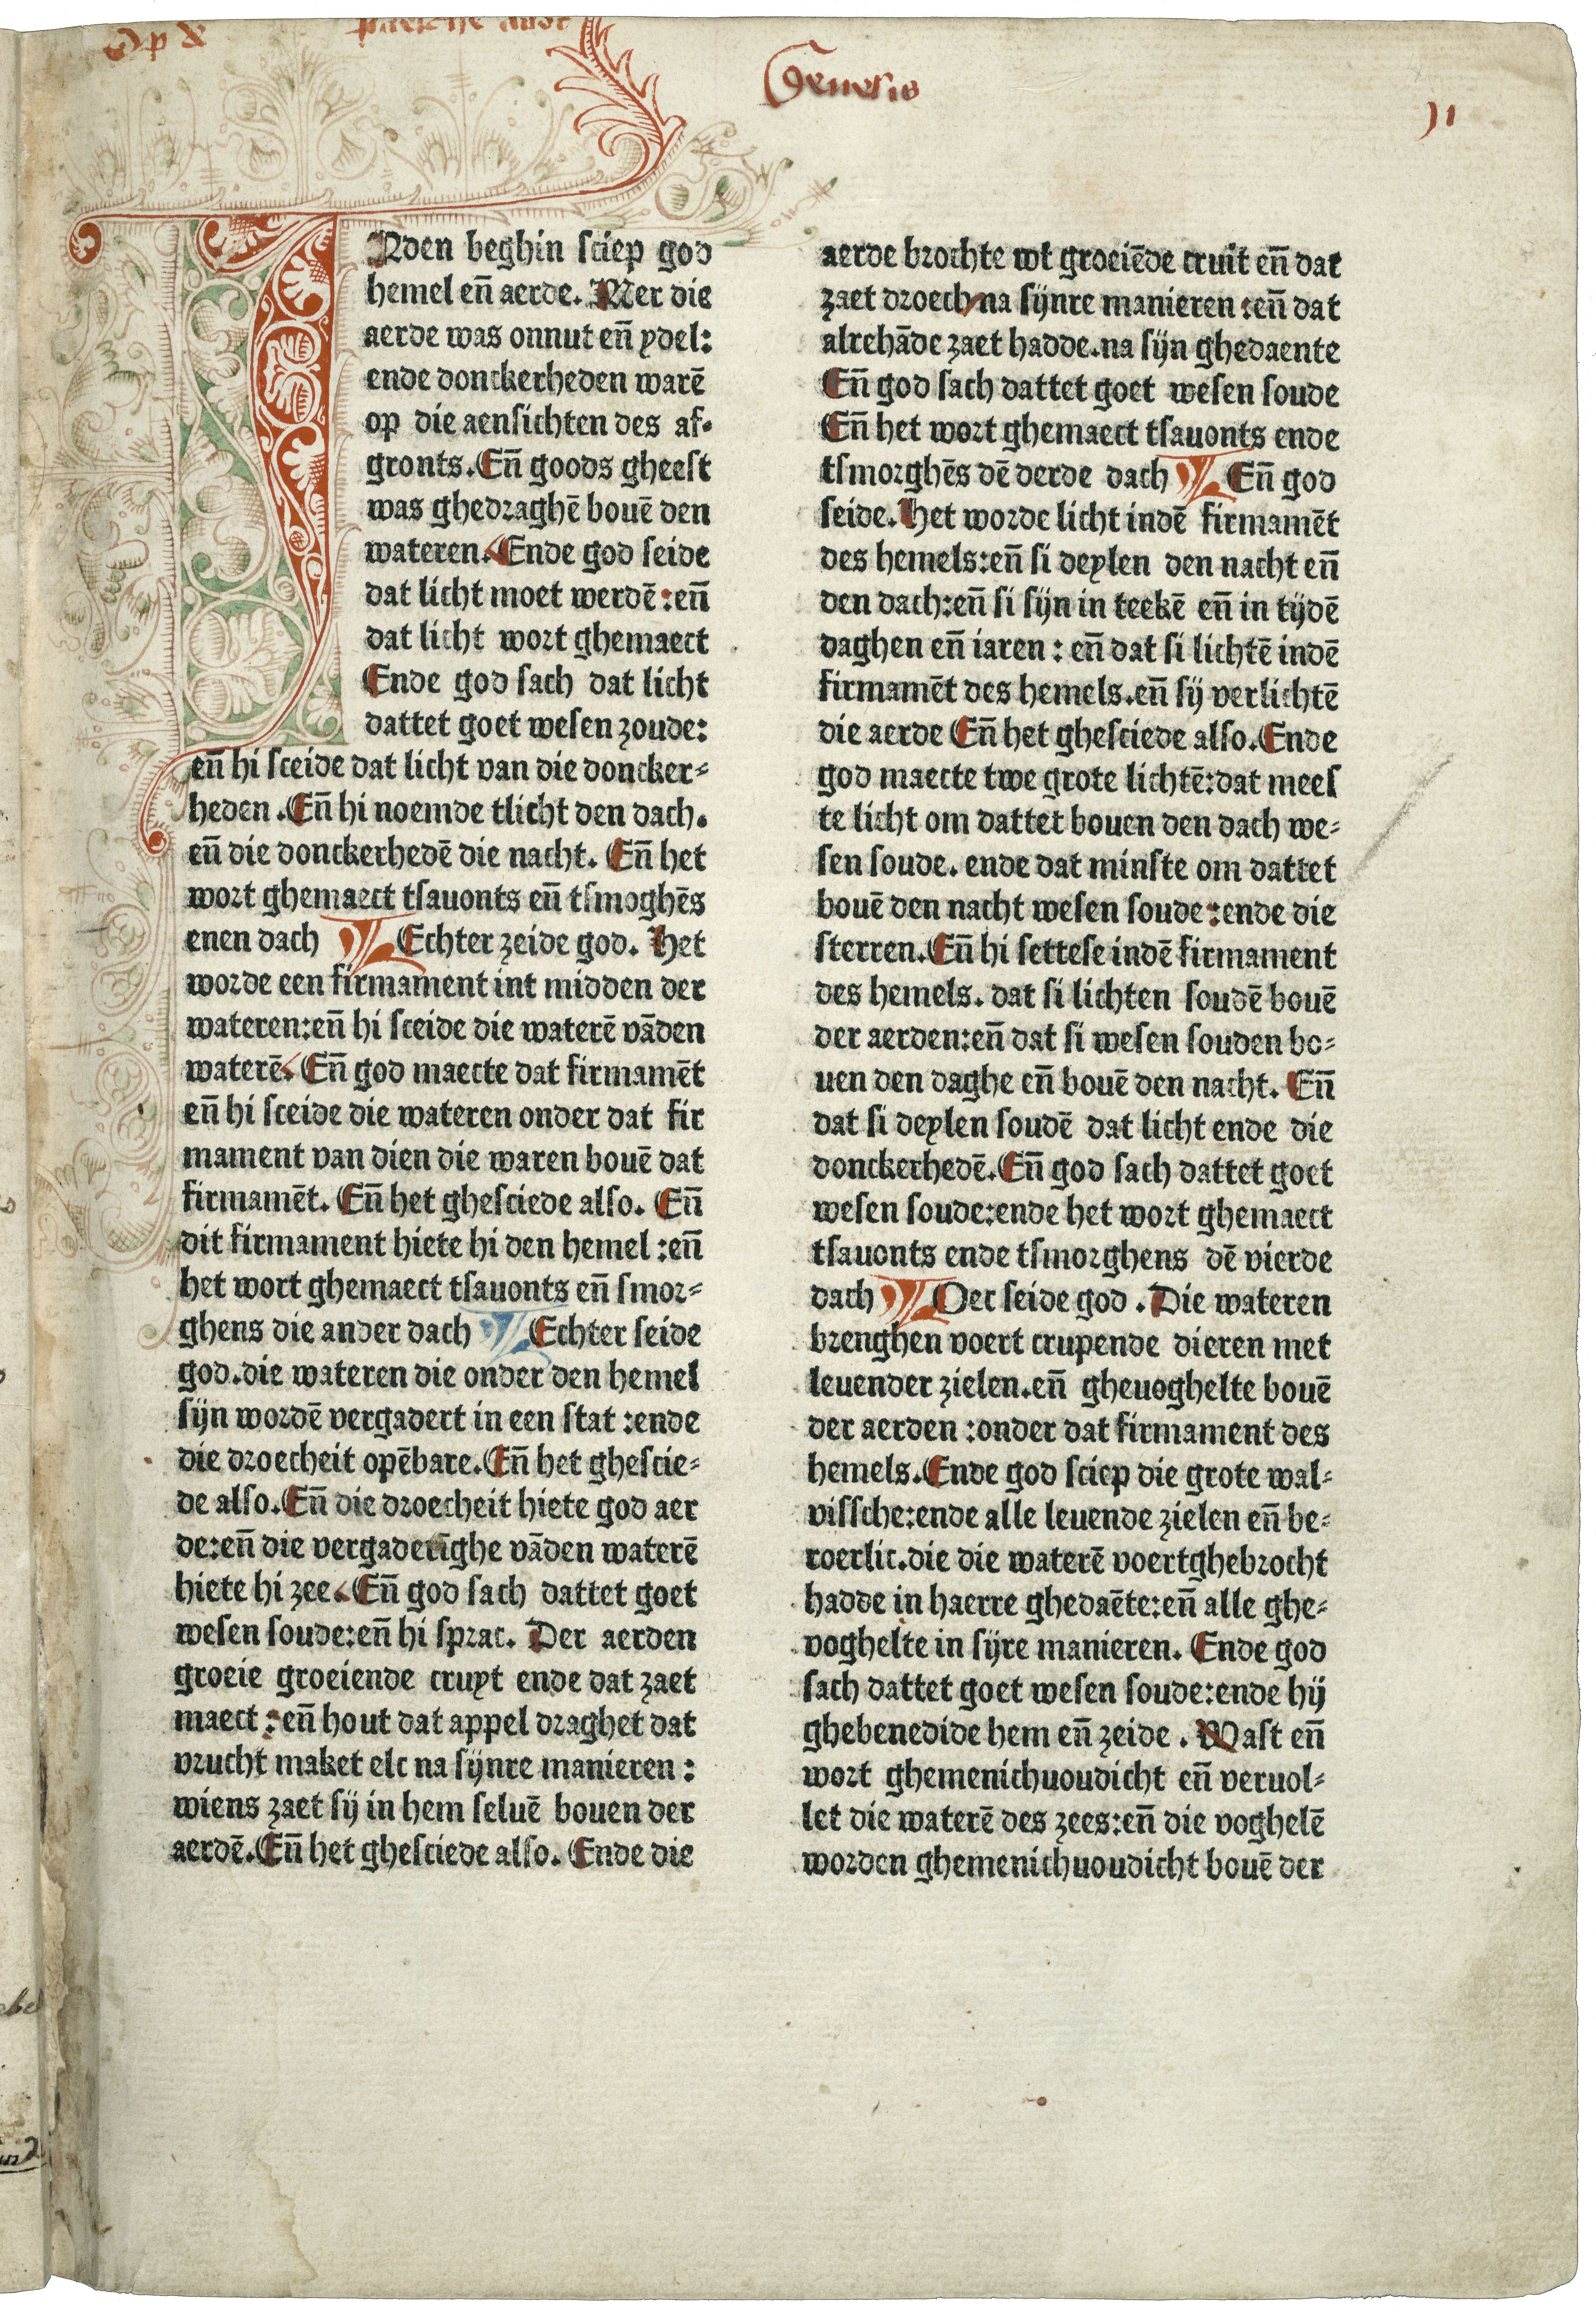 pagina uit de eerste gedrukte Nederlandse tekst, de Delftse bijbel uit 1477